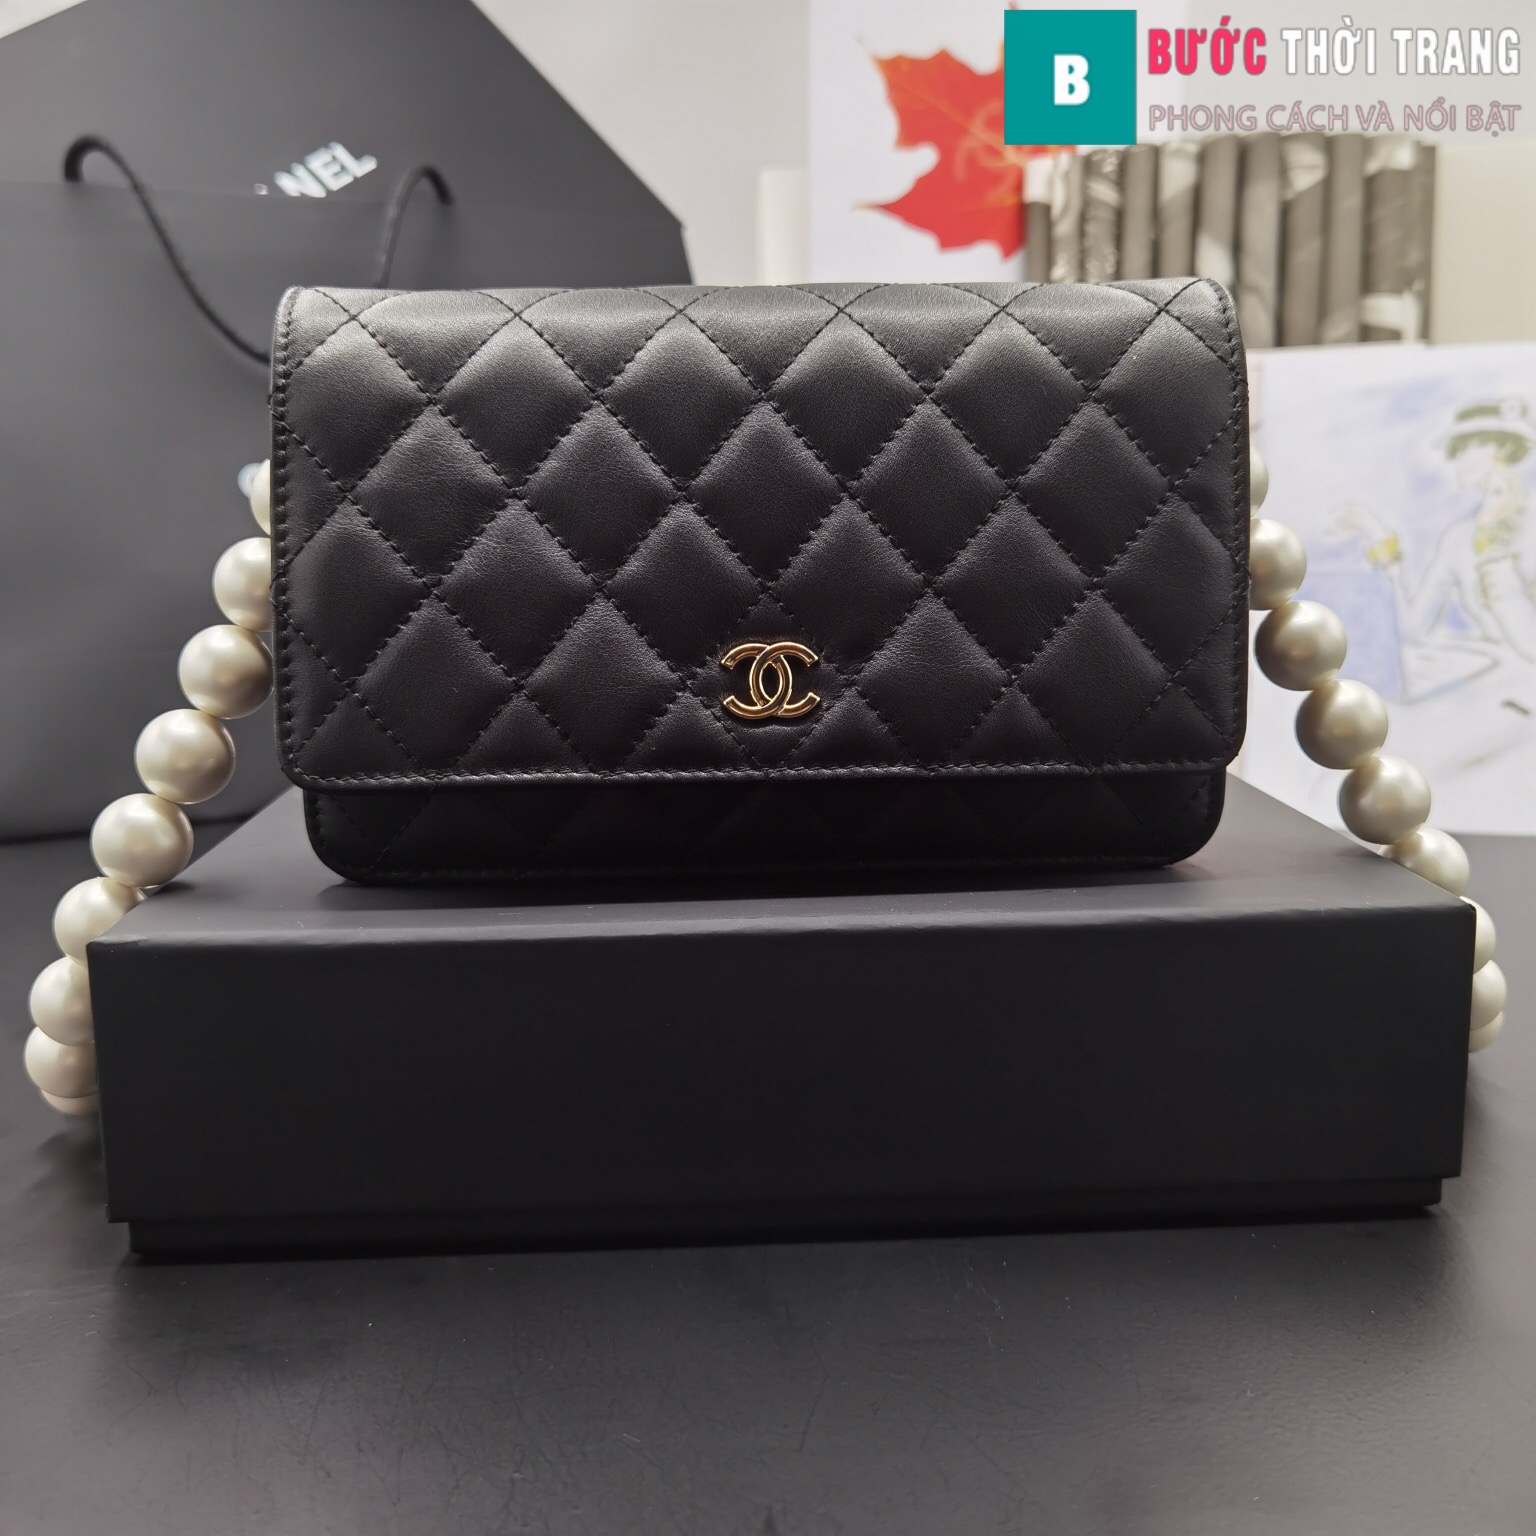 Chanel Classic WOC Caviar Black Limited CC Chain Ghw Bag New 100  Tín đồ  hàng hiệu